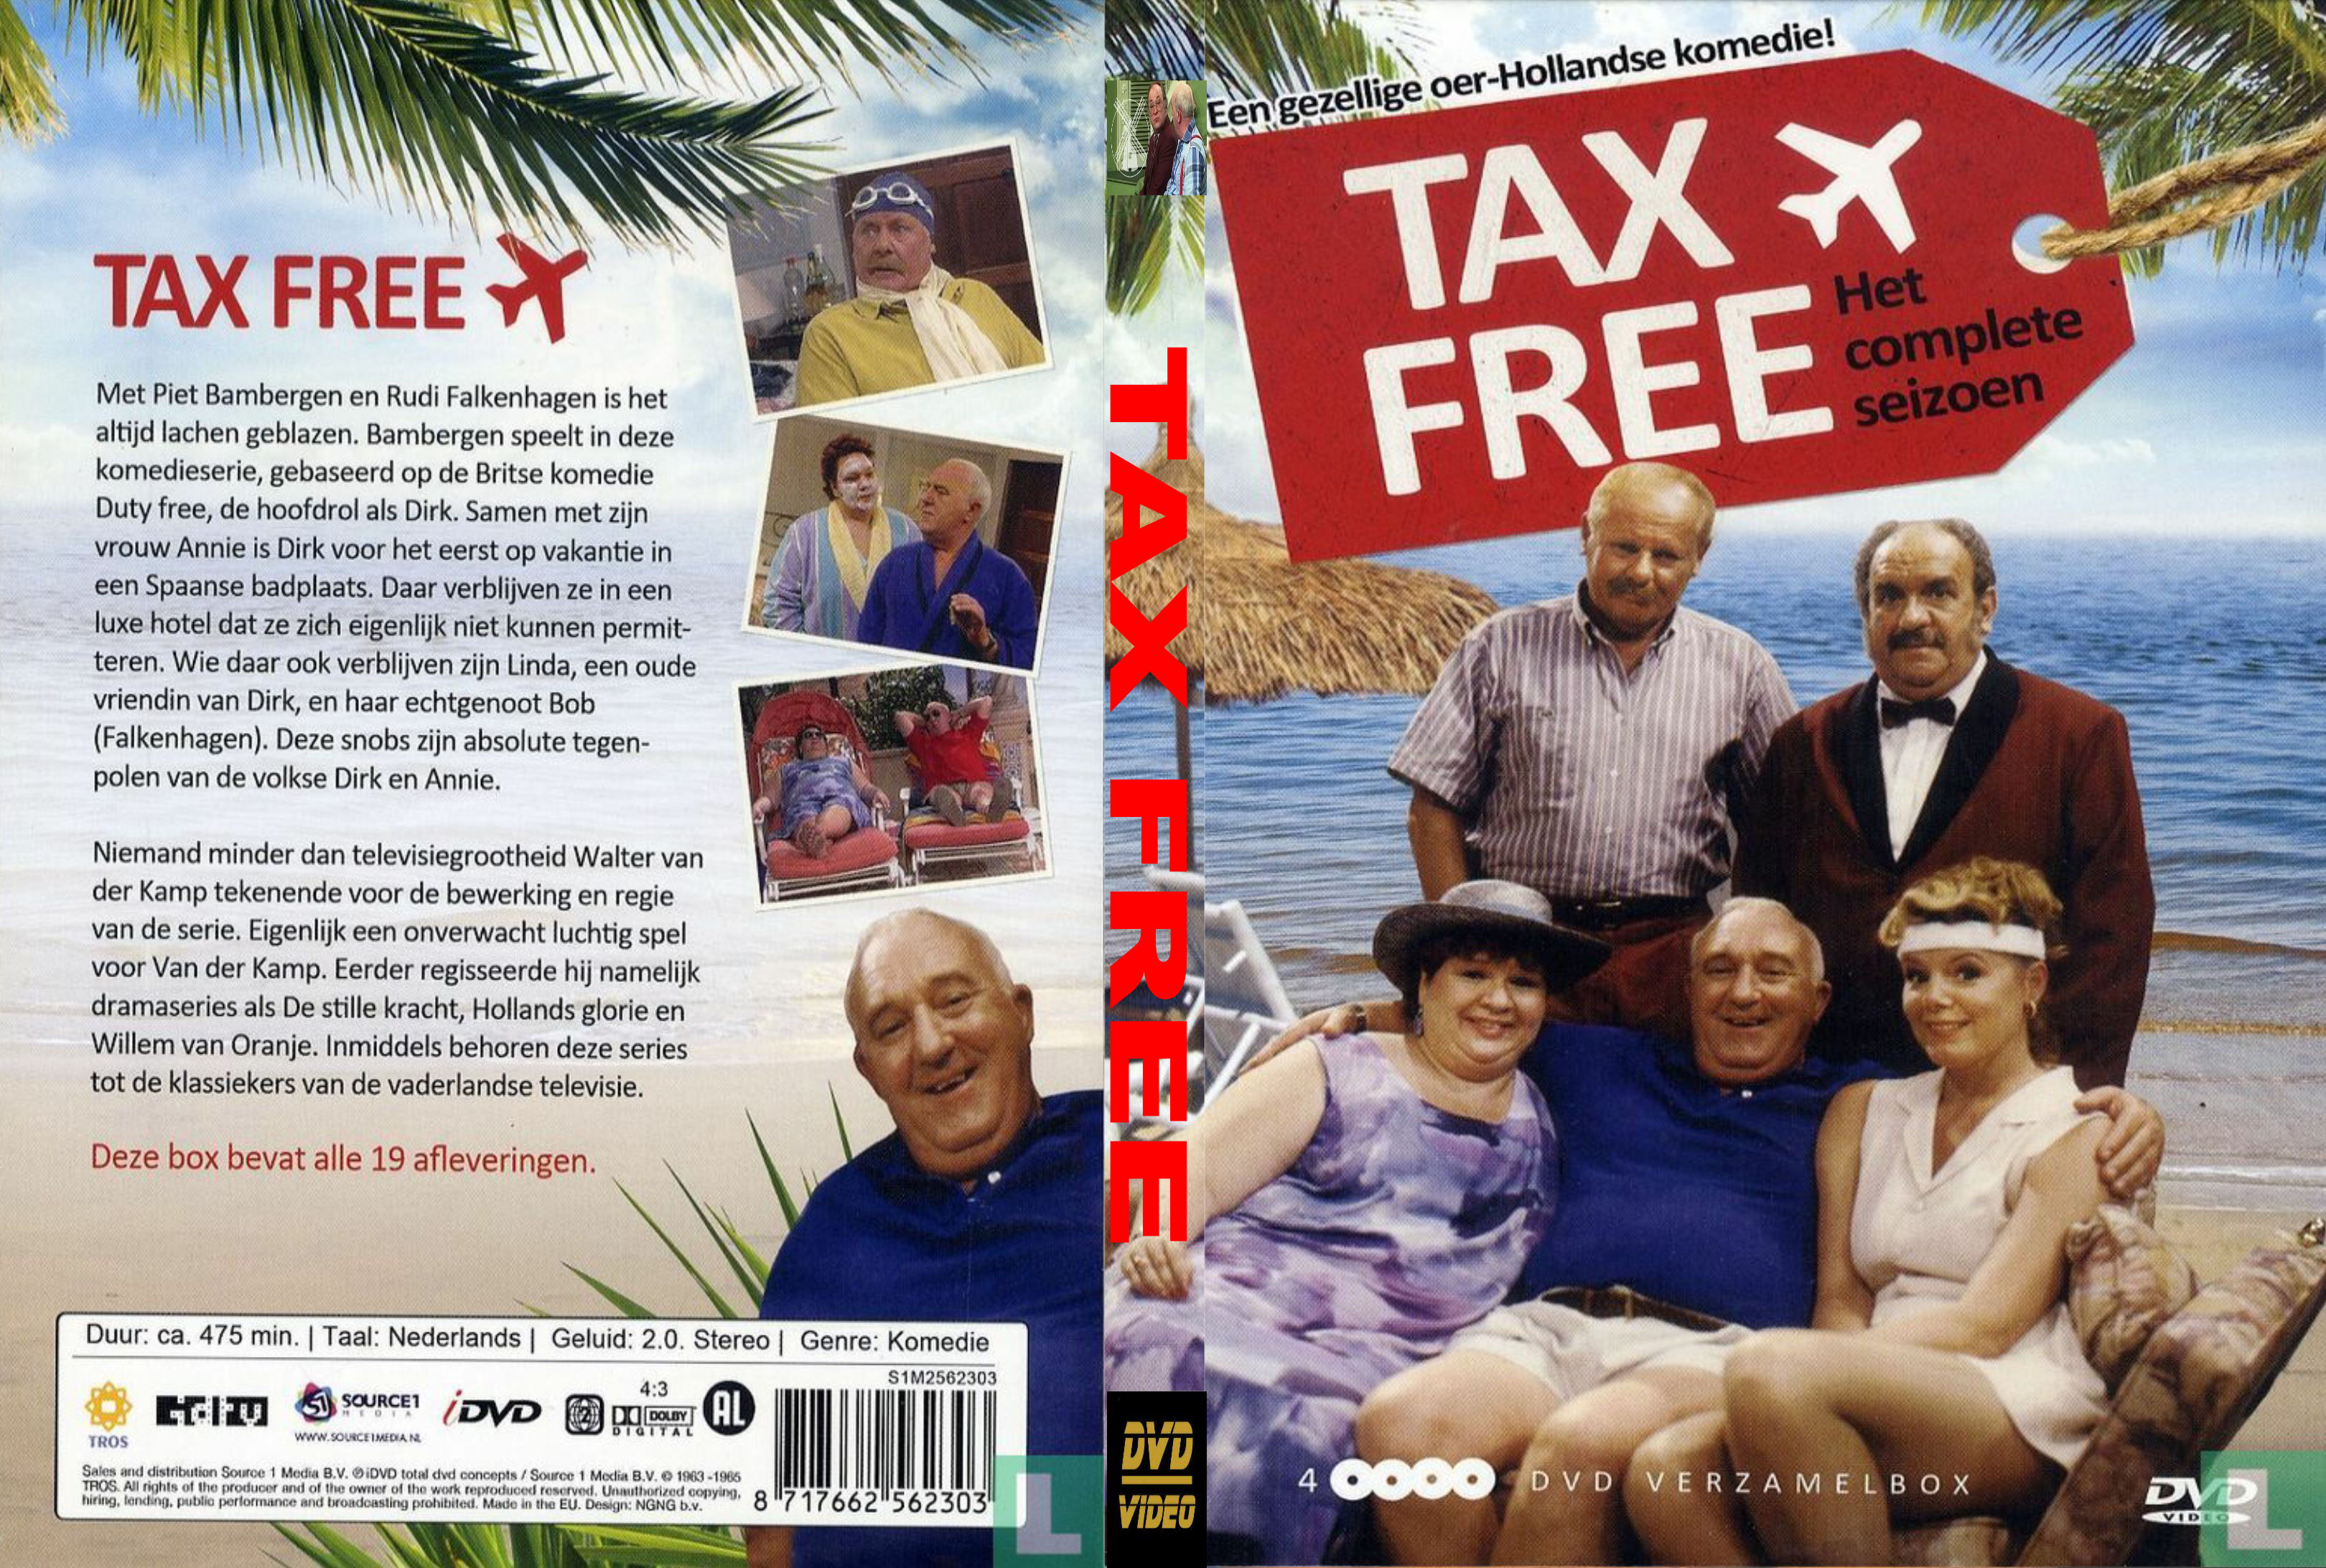 Tax Free - DvD 3 van 4